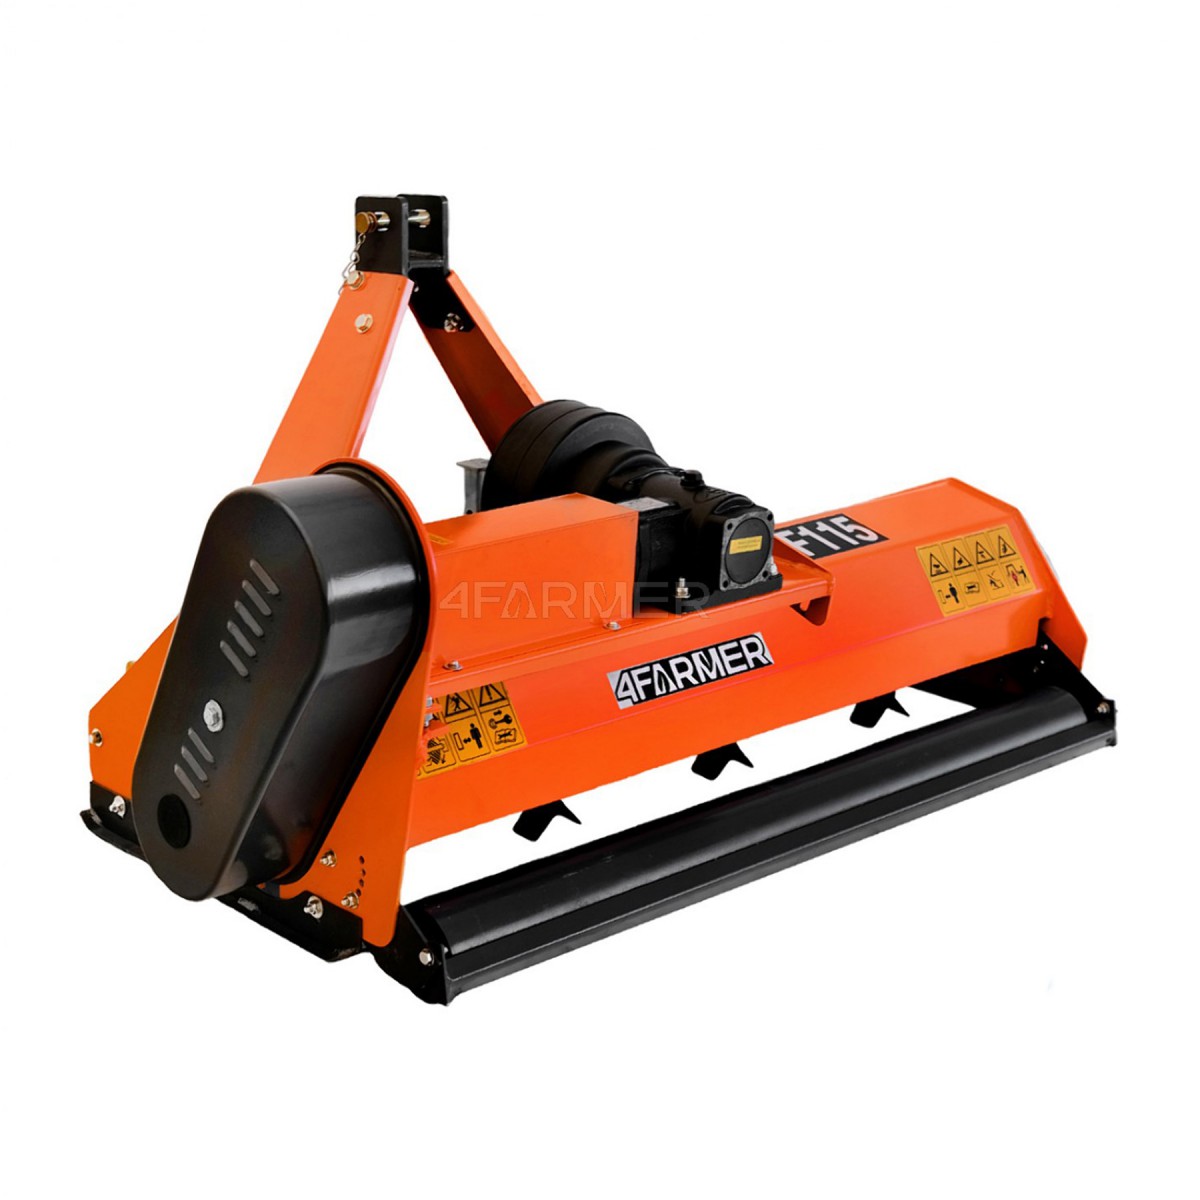 Trituradora de martillos EF 105 4FARMER - naranja